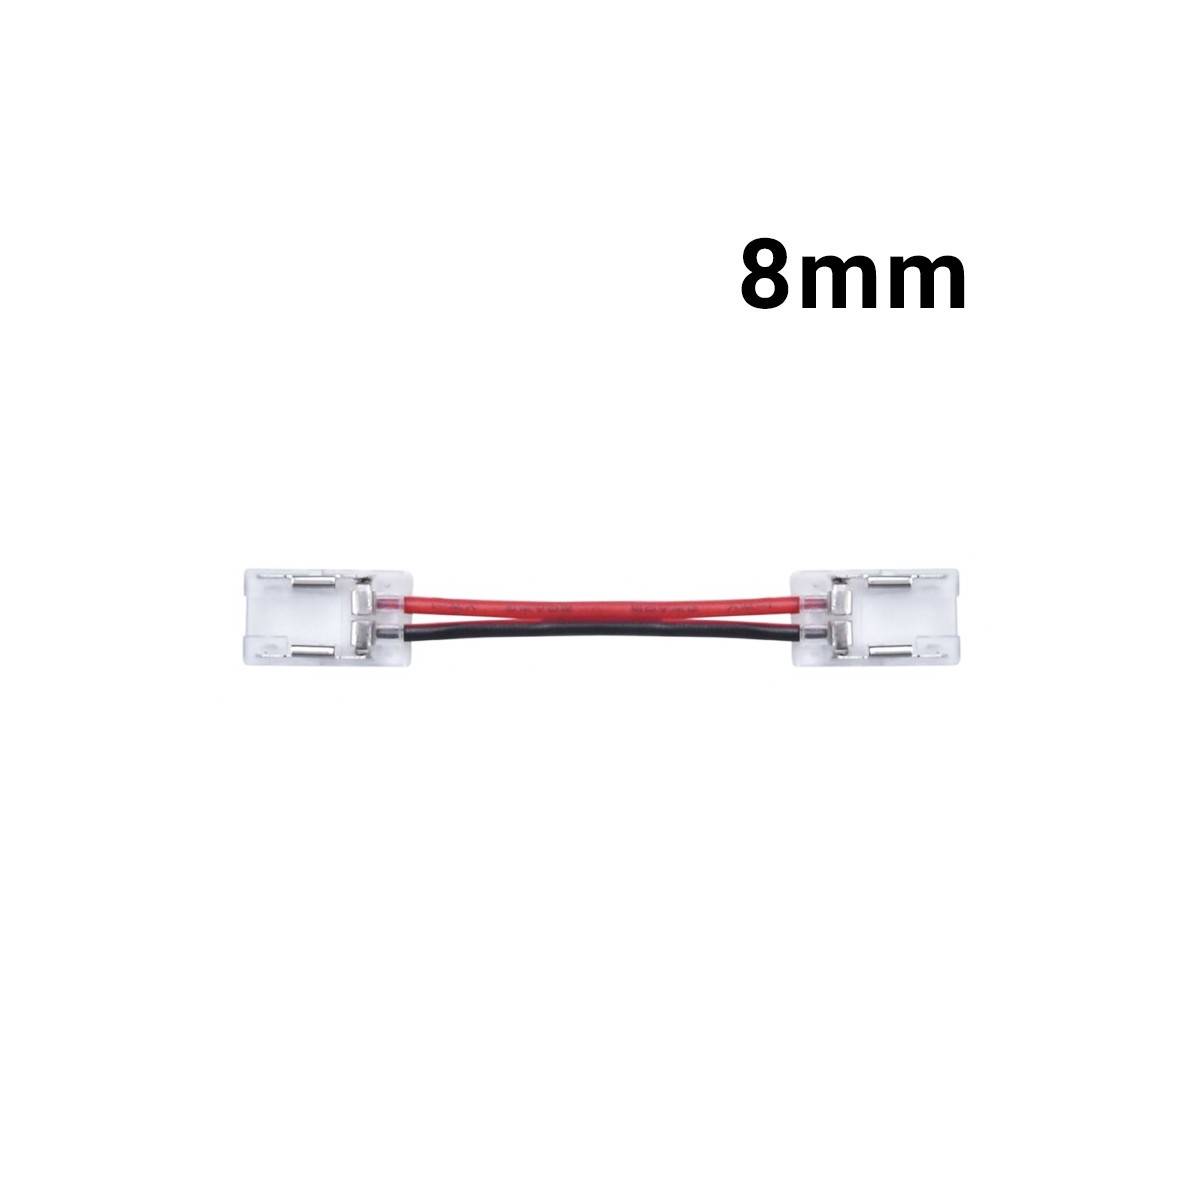 Conector rápido de cor única para faixa LED de 8mm para perfil